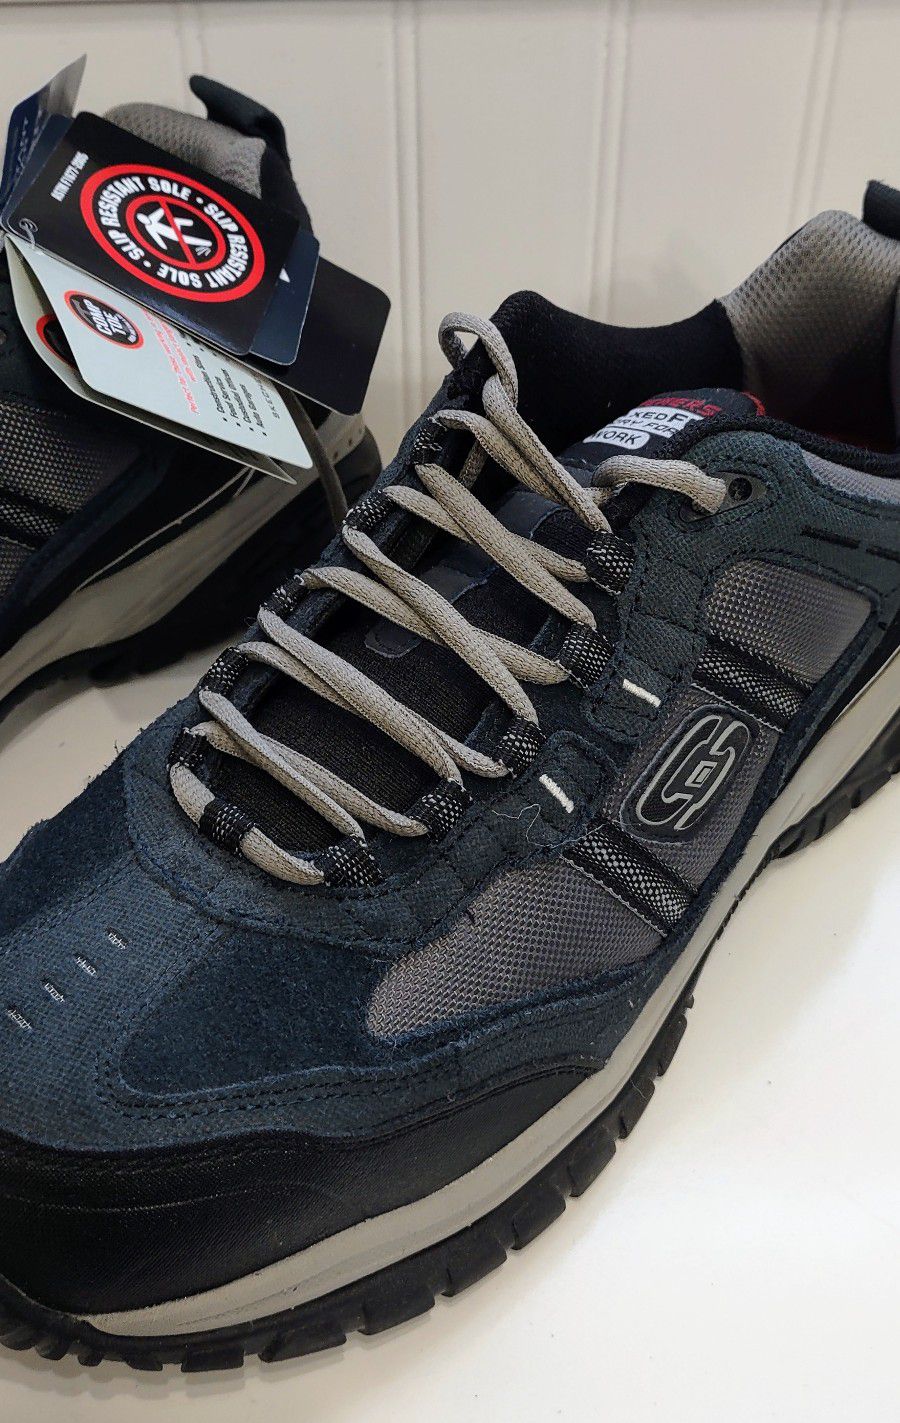 Skechers Relaxed Fit Memory Foam Work Sneaker/Shoe Wide Width 10 NWT for Sale Nashua, NH - OfferUp